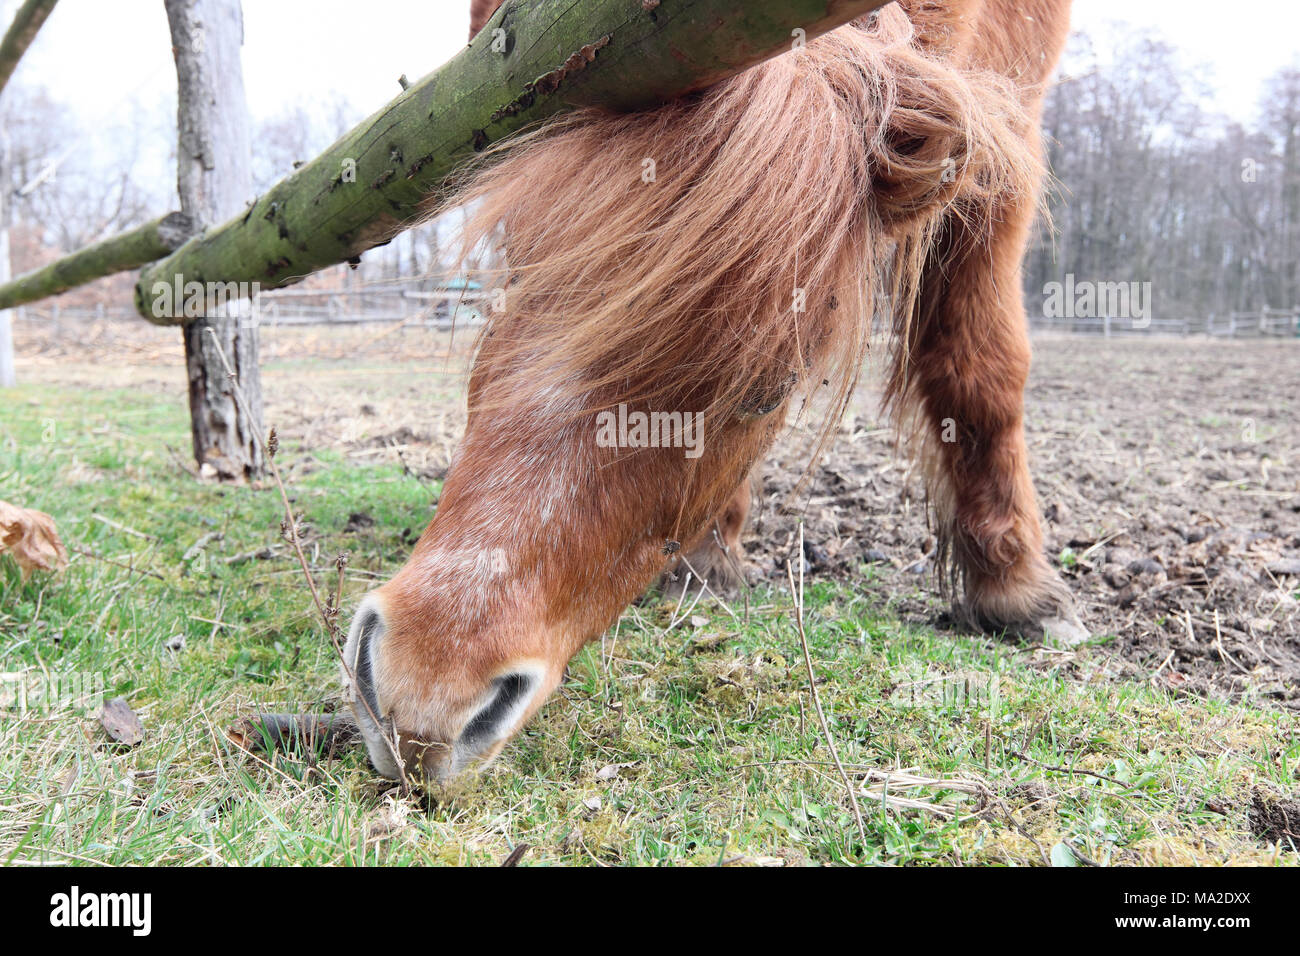 La ricerca di cibo - un cavallo in pascolare - dettaglio Foto Stock